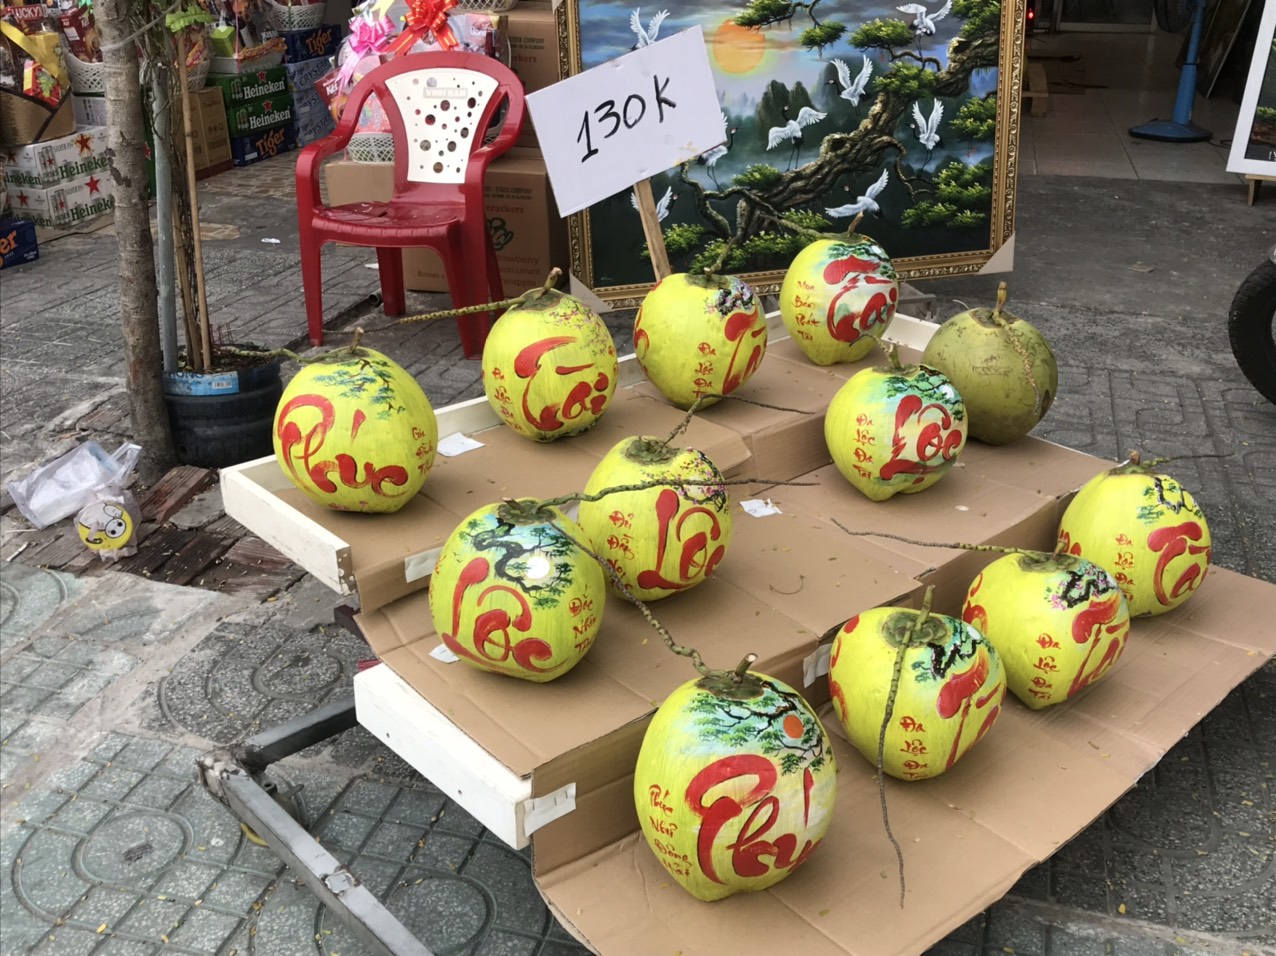 Còn tại một cửa hàng gần công viên Hoàng Văn Thụ (quận Tân Bình) nhiều sản phẩm dừa vẽ chữ khá thu hút khách hàng, với giá 130.000 đồng/trái, 